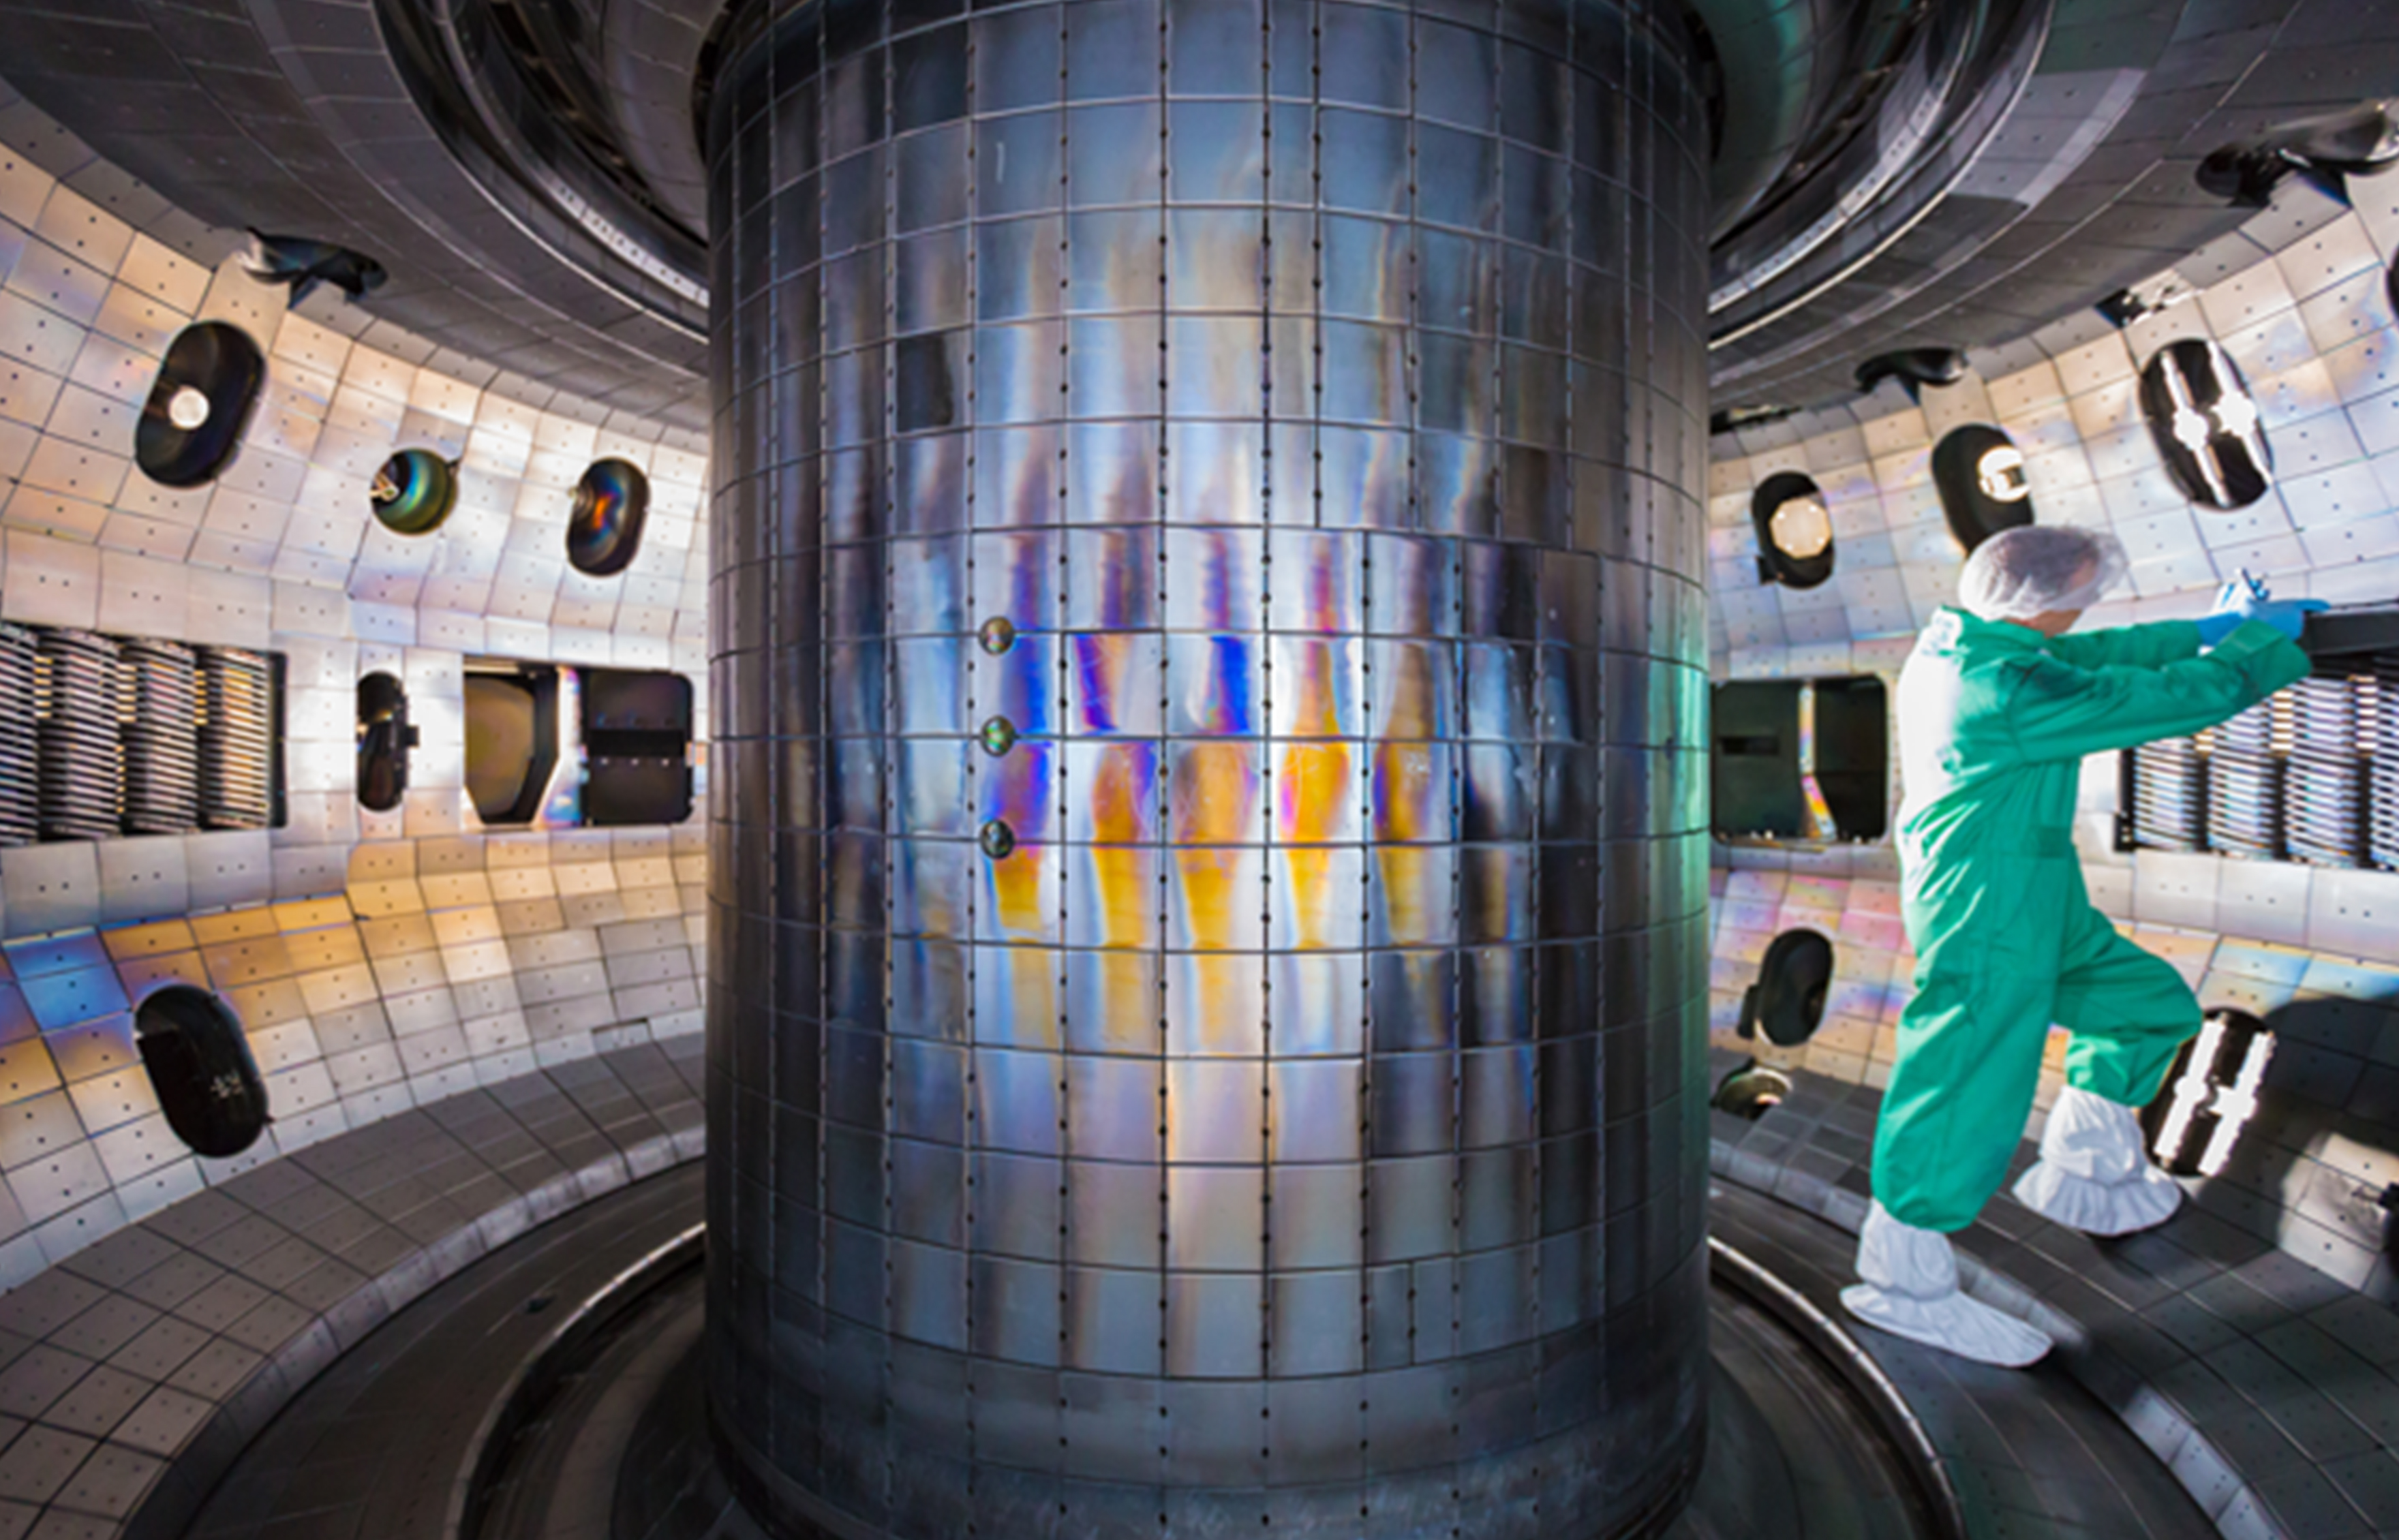 fusion reactor core